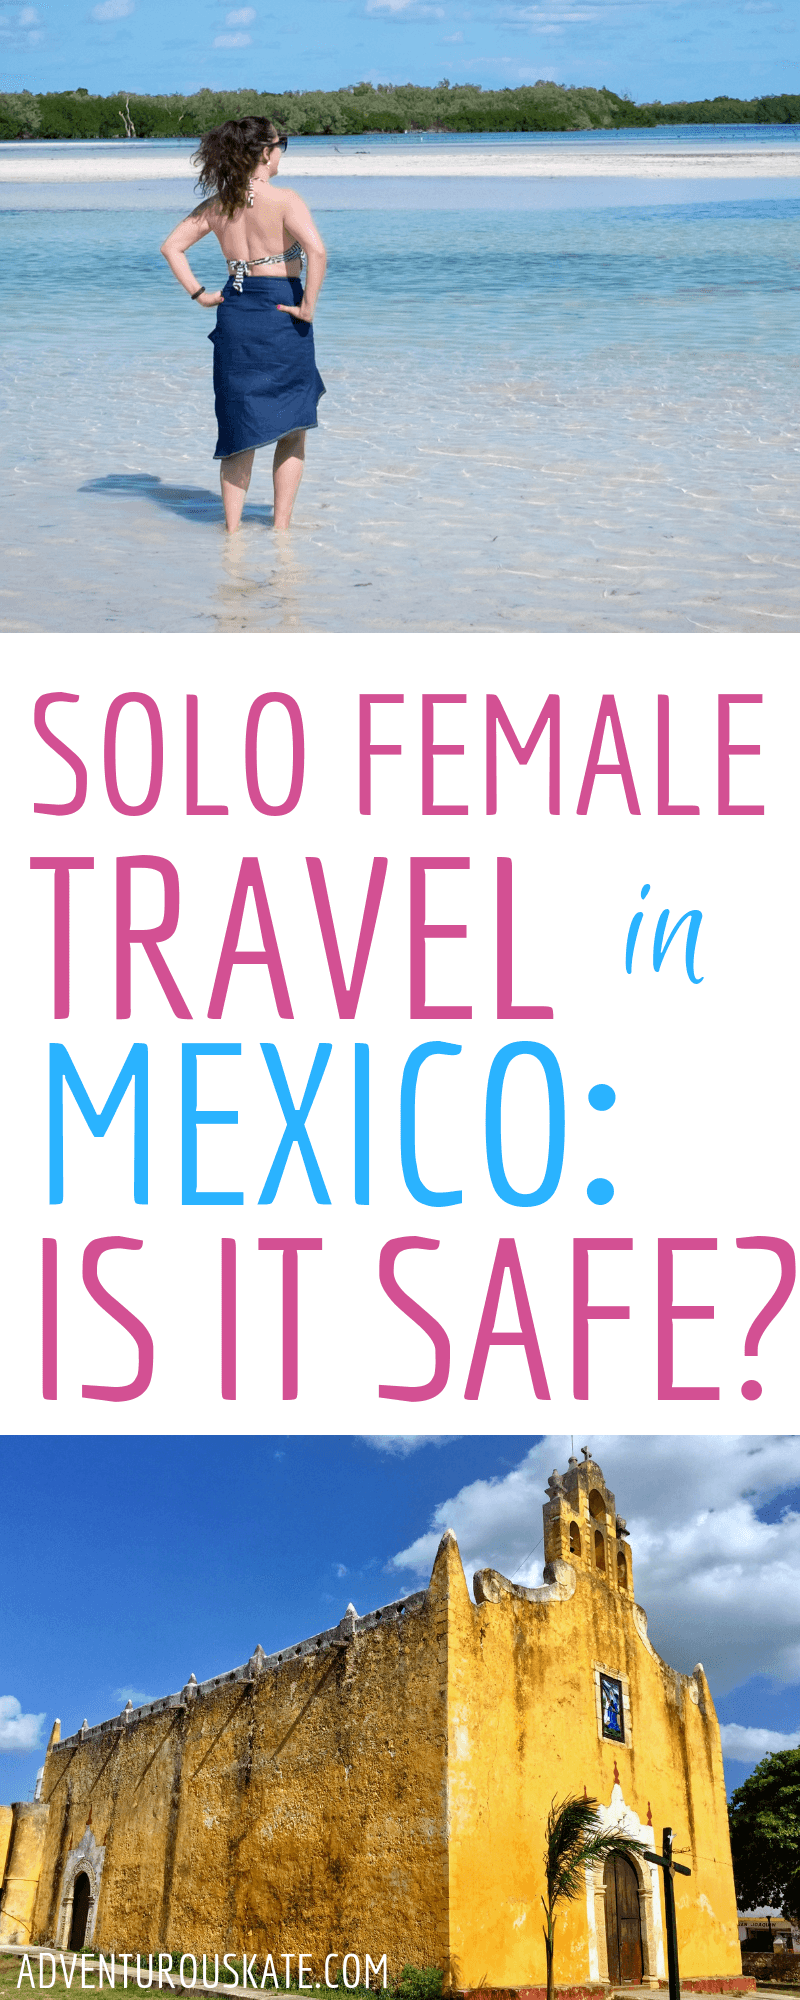 solo female travel mexico